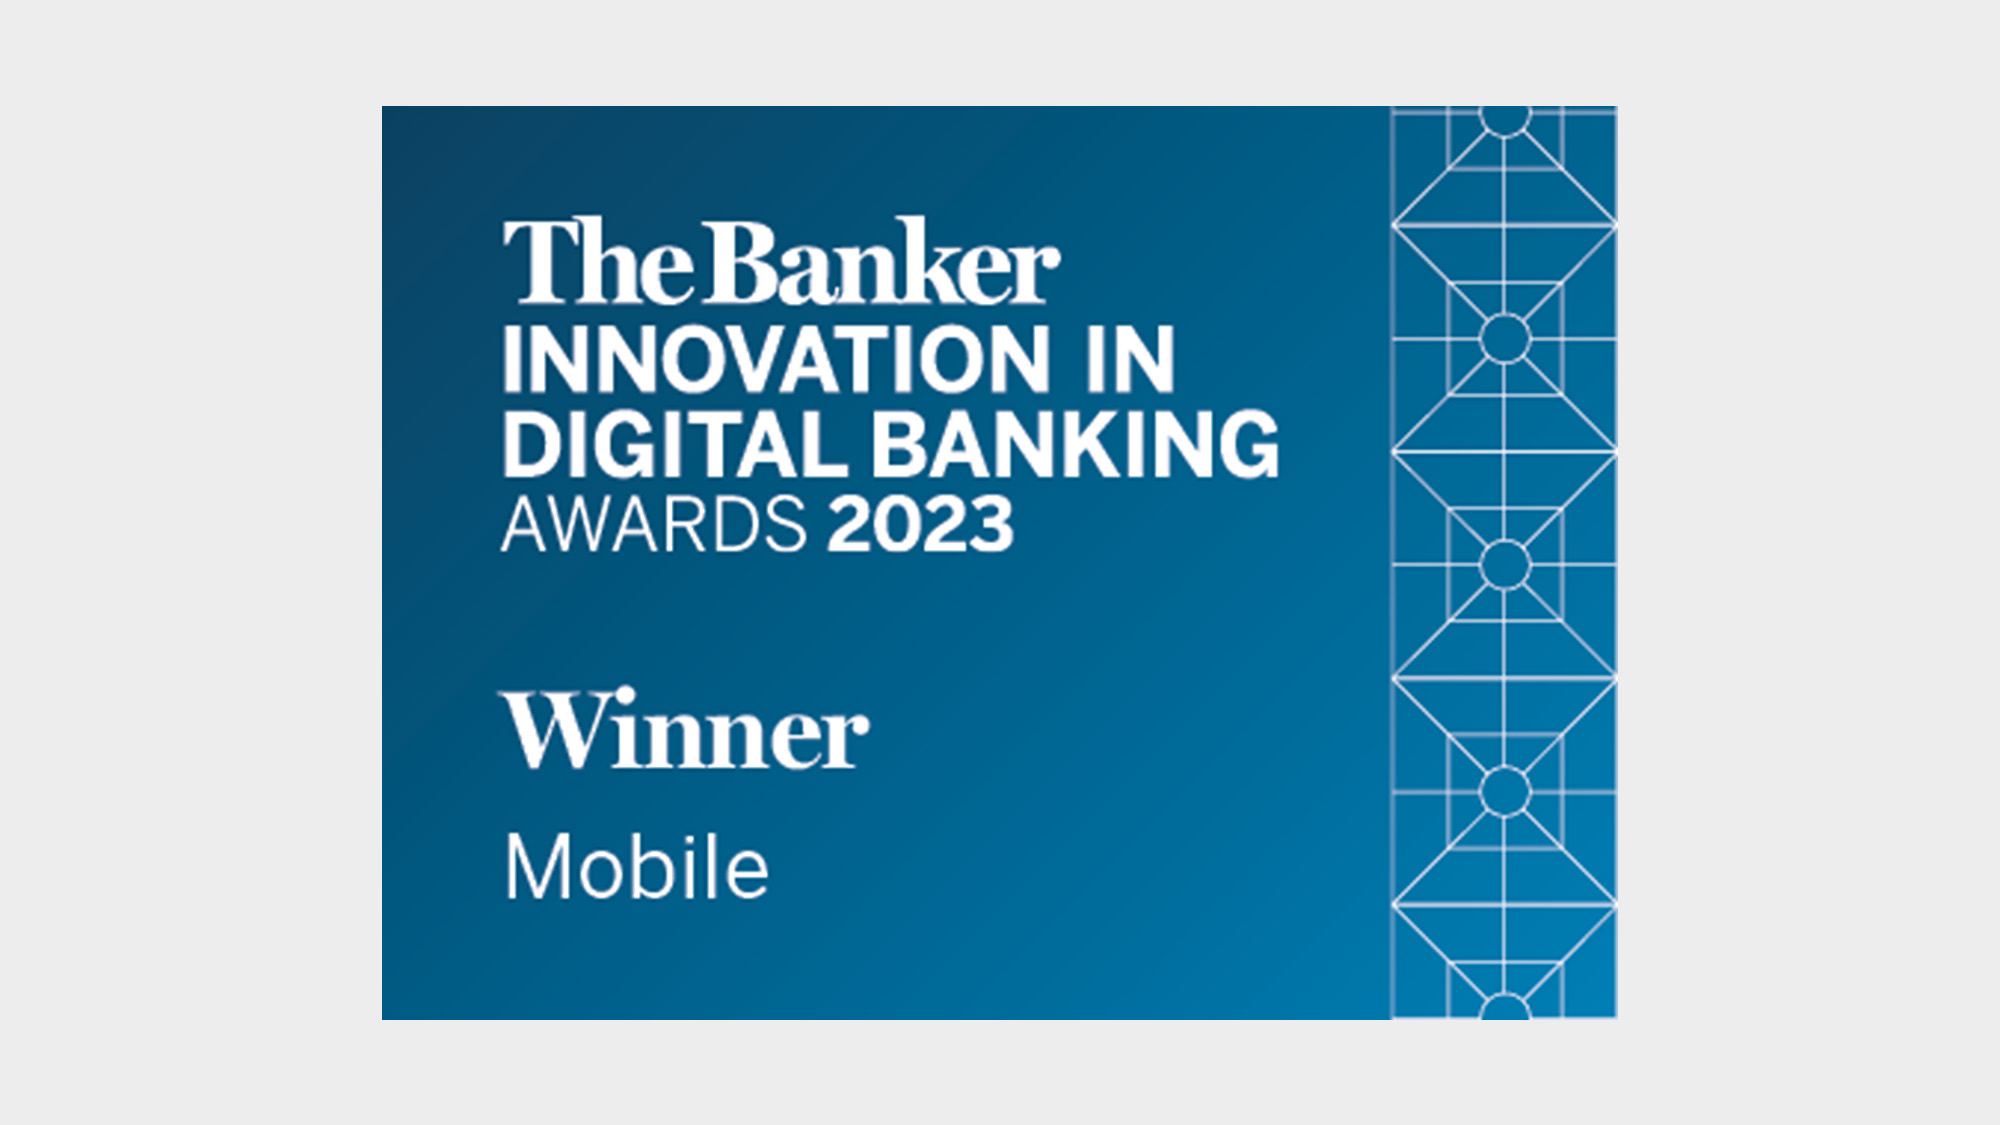 The banker, innovation in digital banking awards 2023, winner, mobile logo